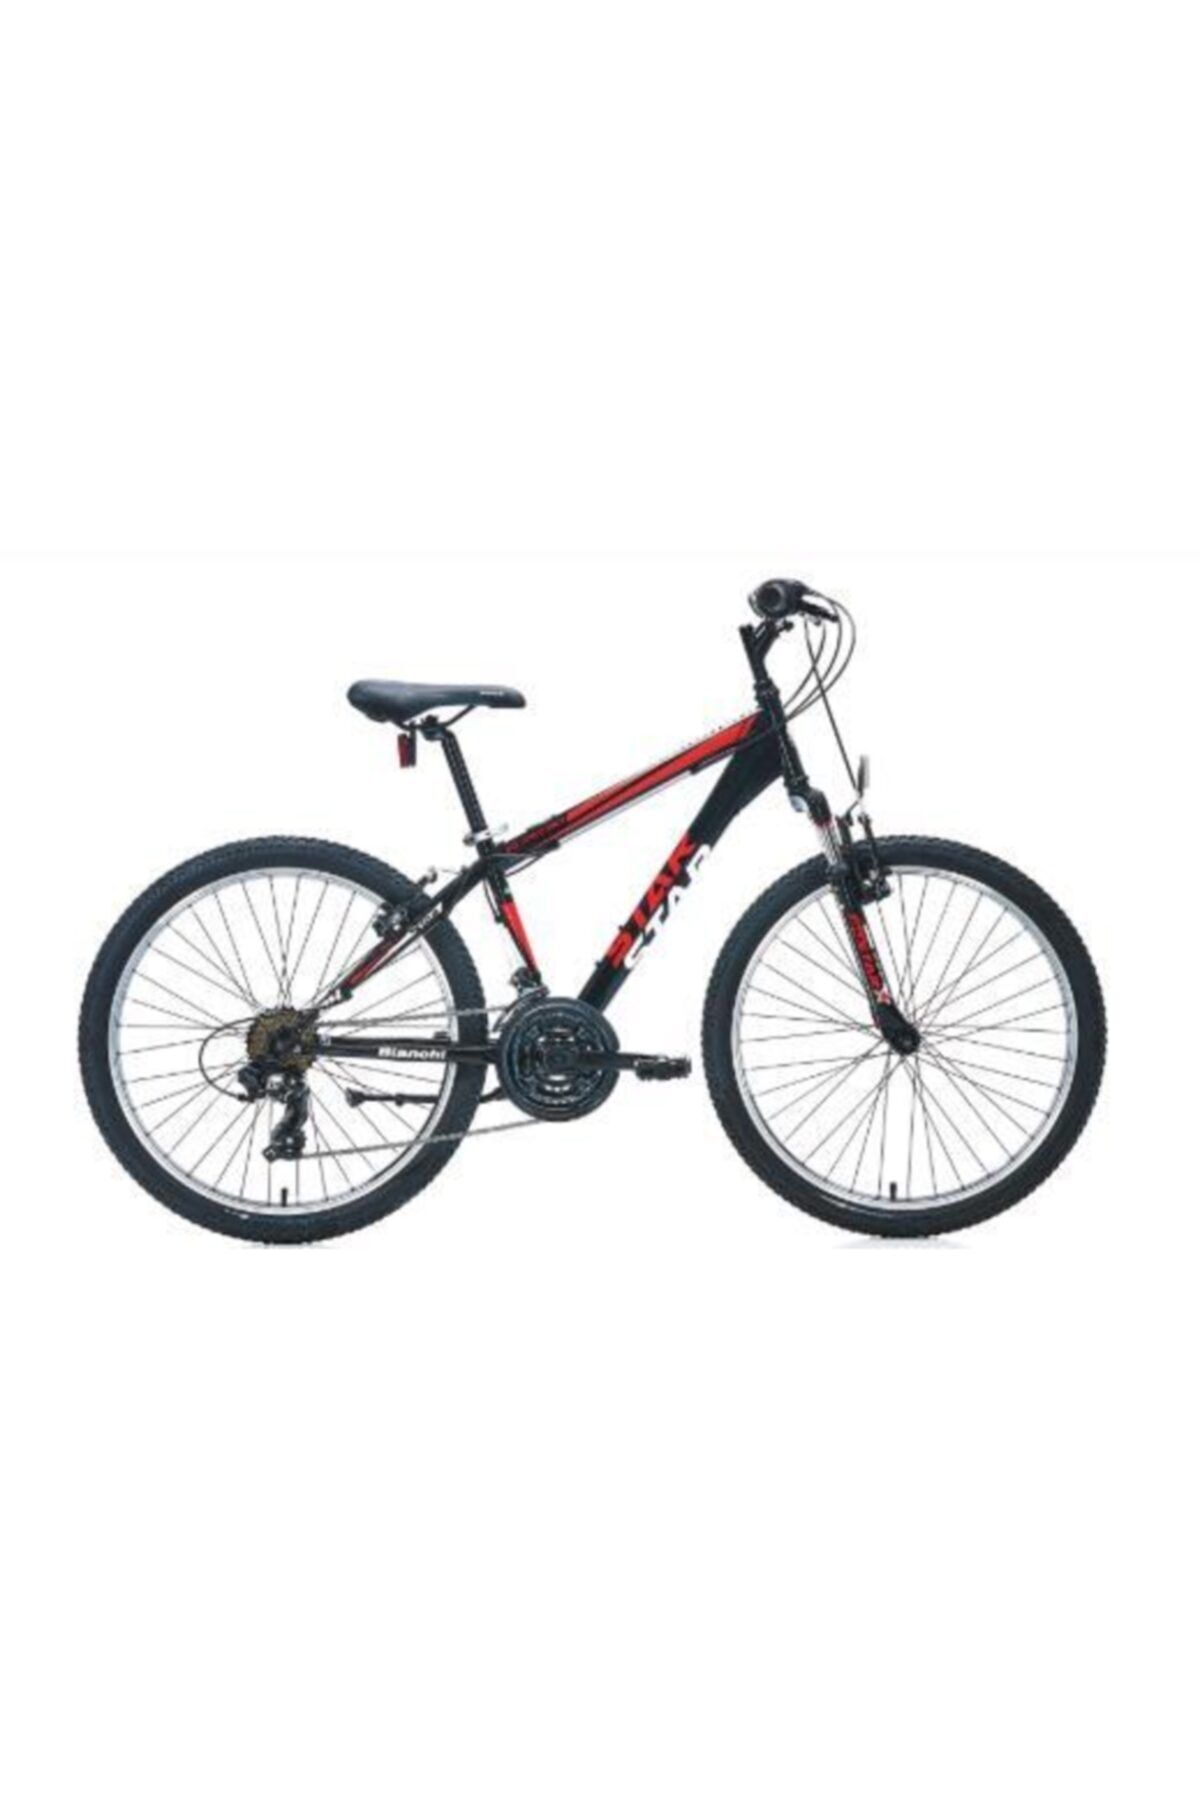 Bianchi Star 24 Jant V 21 Vites Erkek Dağ Bisikleti Siyah-kırmızı-beyaz (36 Cm) 2020